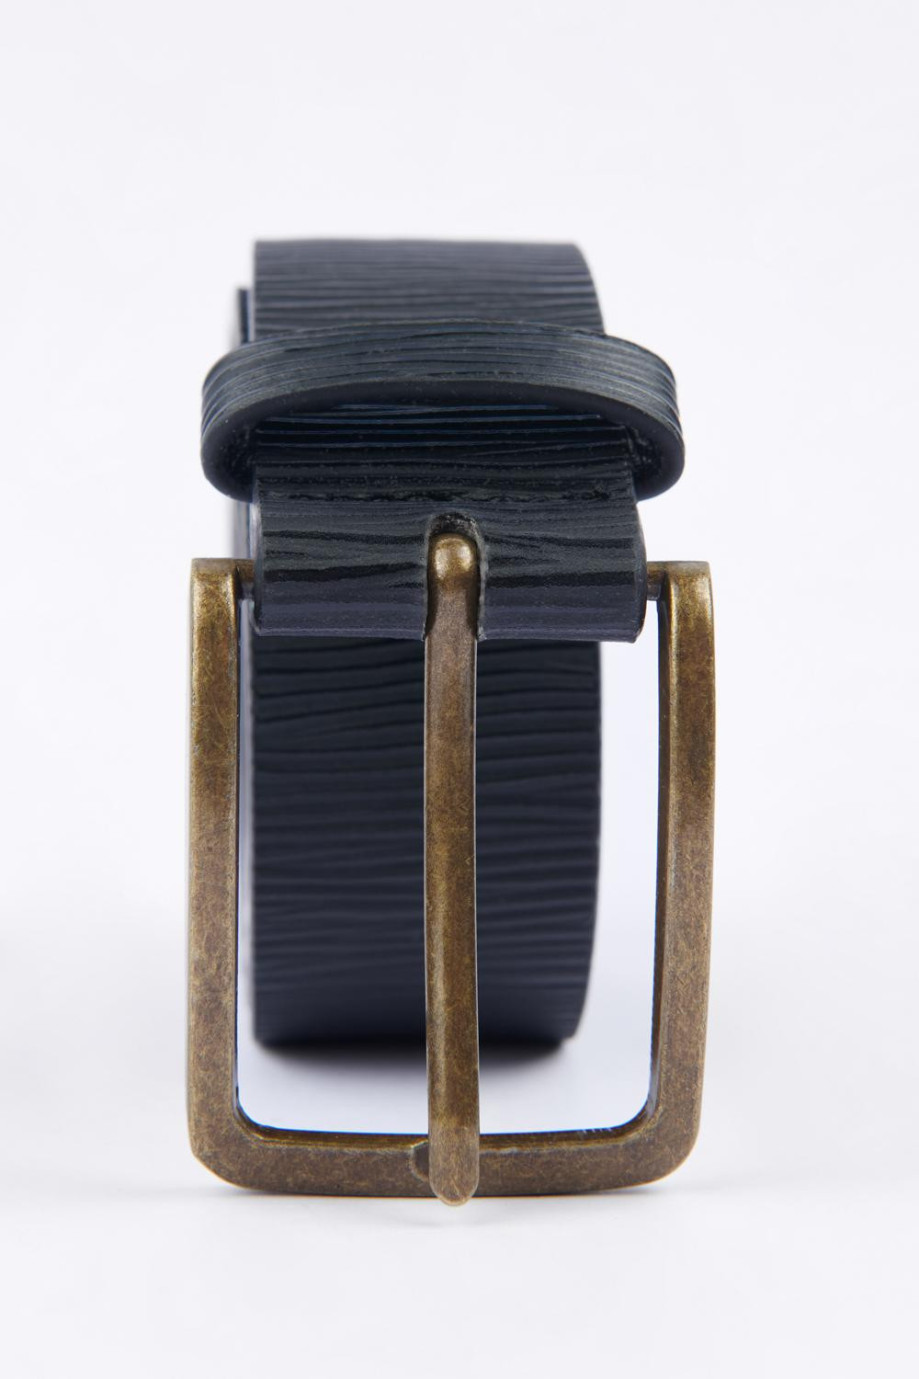 Cinturón sintético negro con hebilla cuadrada dorada y texturas